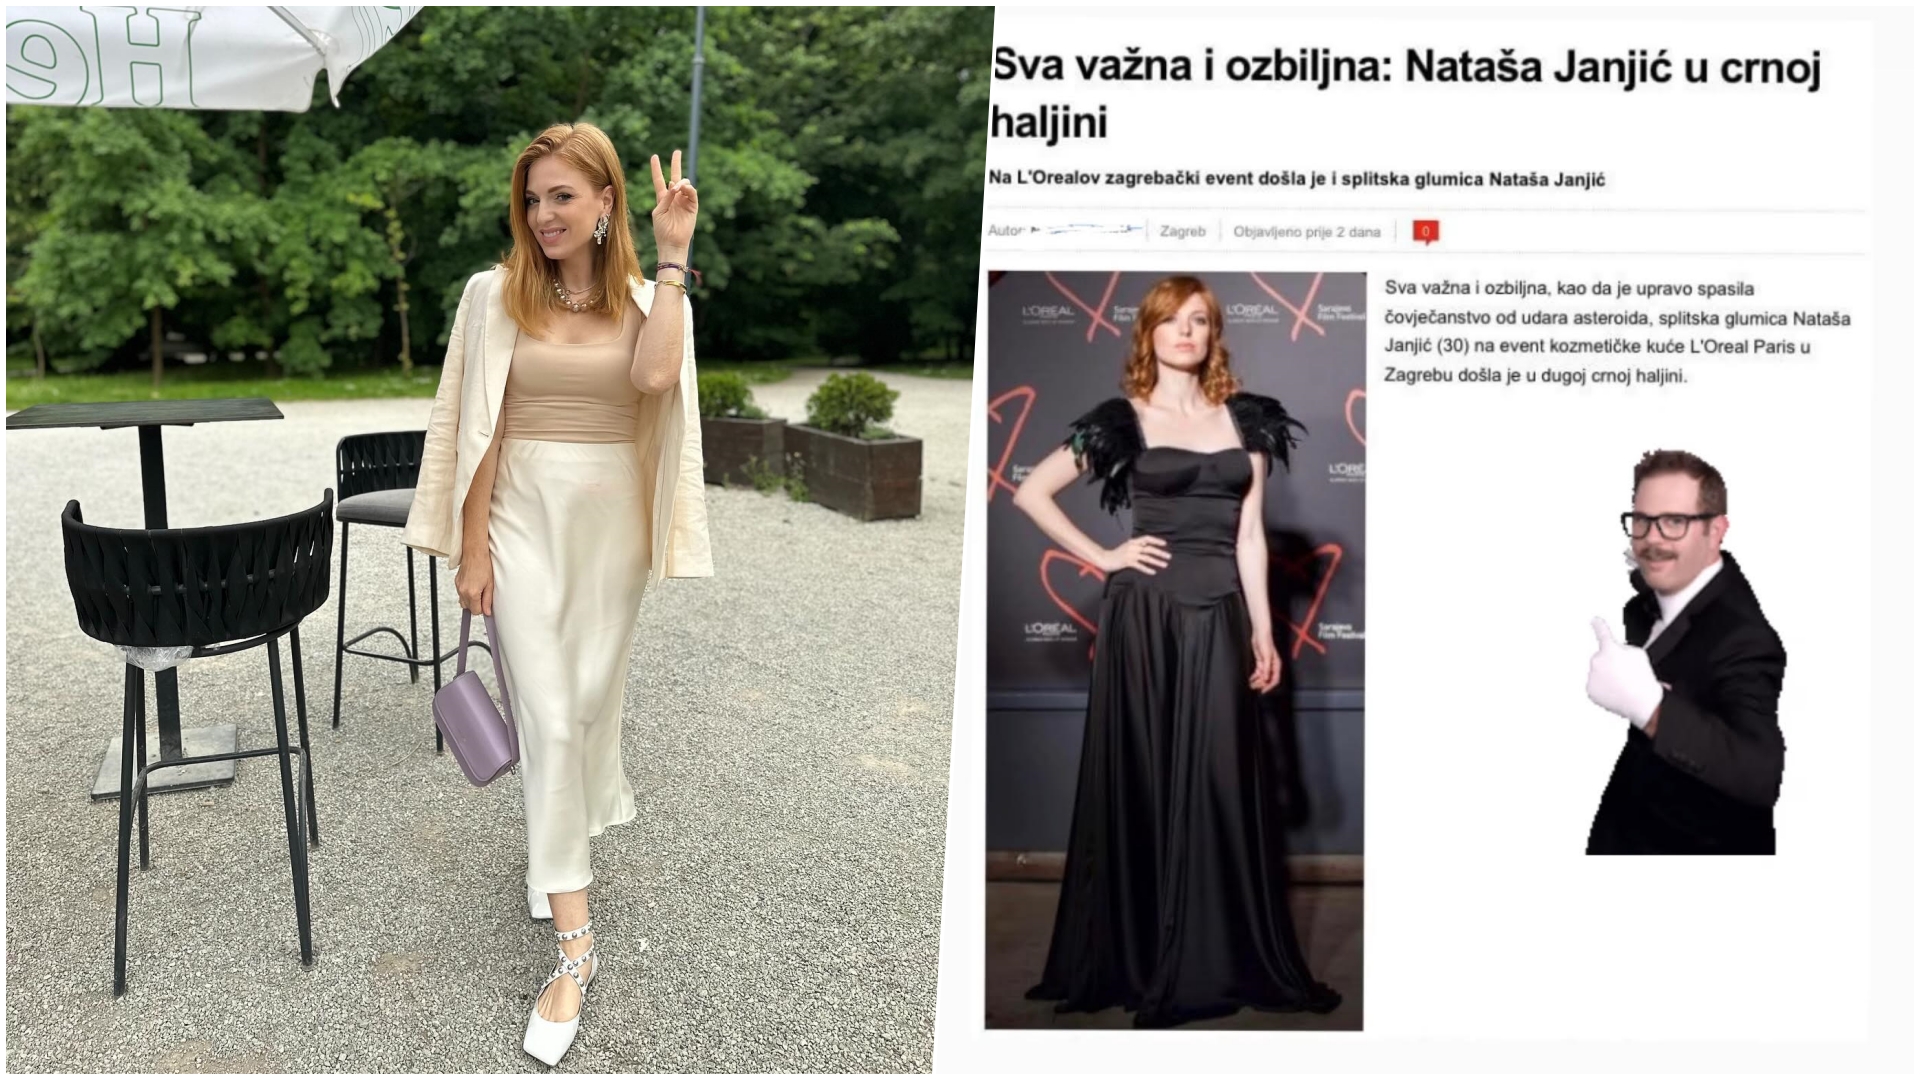 Nataša Janjić